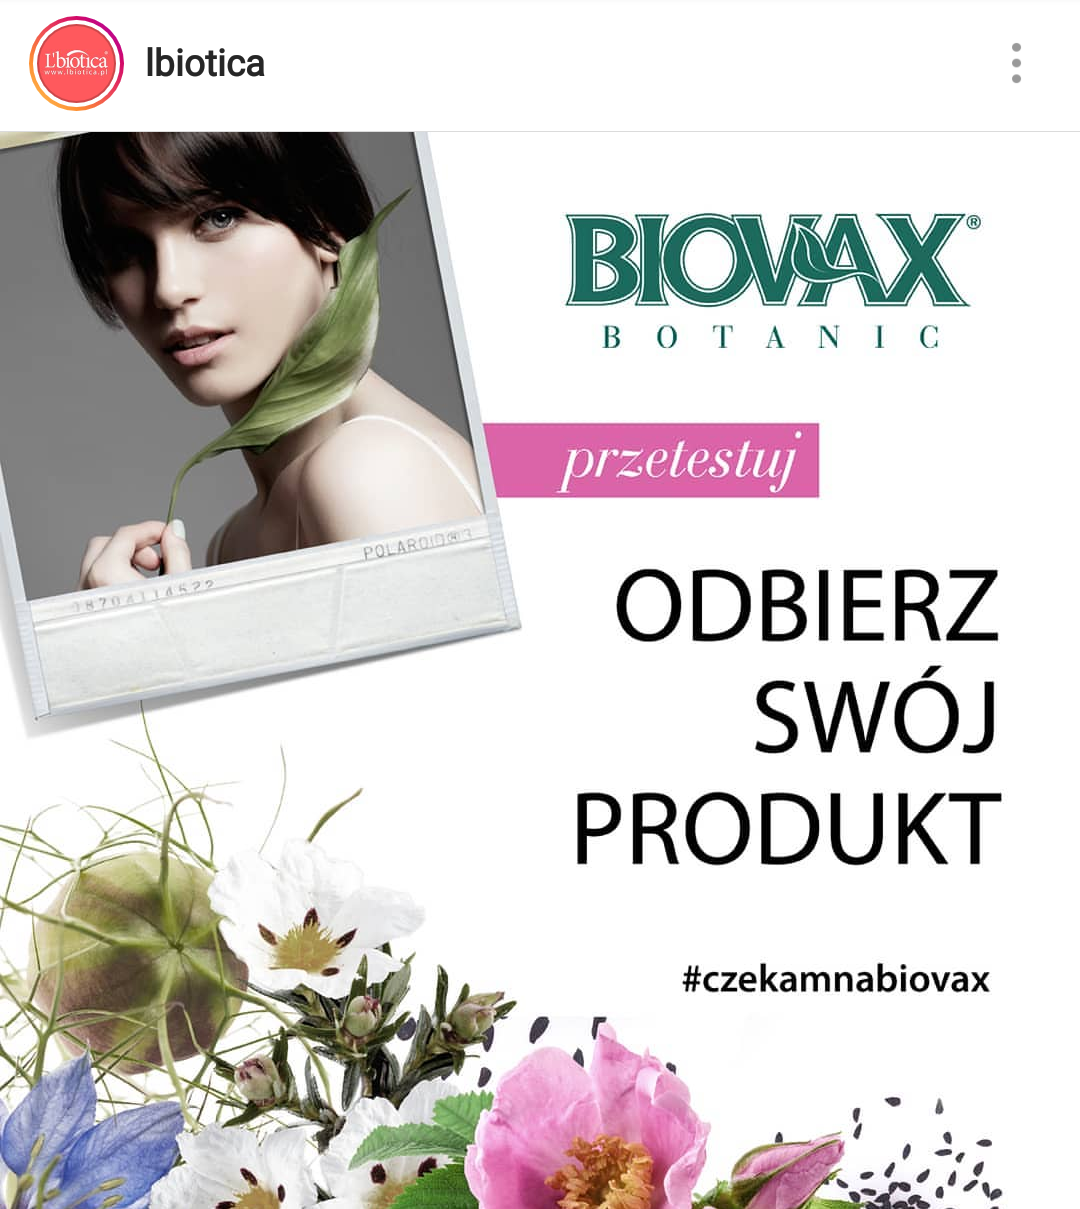 Biovax rozdaje kosmetyki